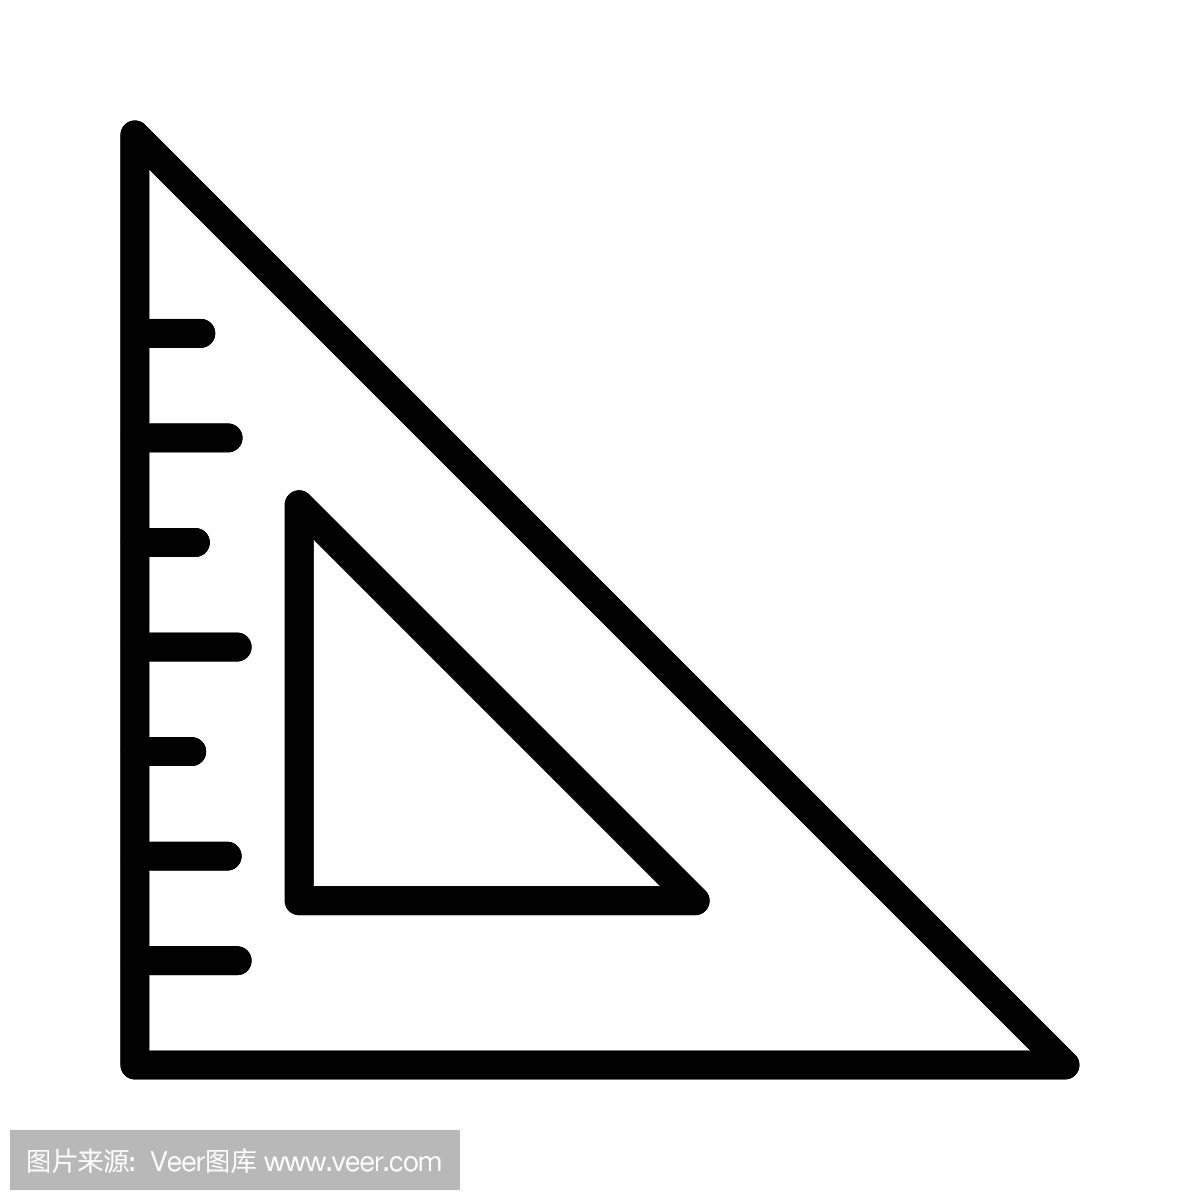 厘米,符号,几何形状,测量工具